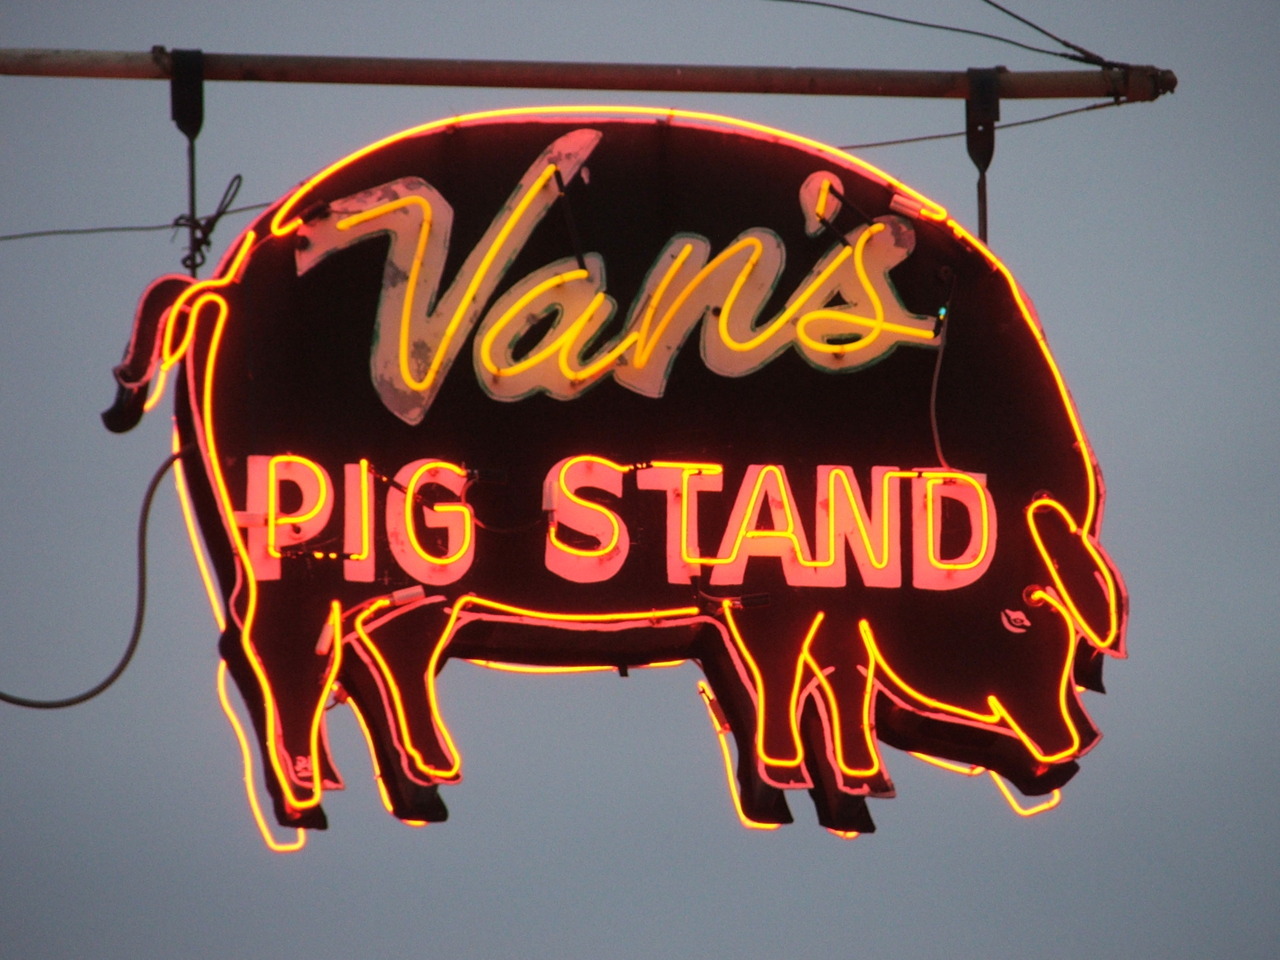 Van's Pig Stand - 717 East Highland Street, Shawnee, Oklahoma U.S.A. - August 2011